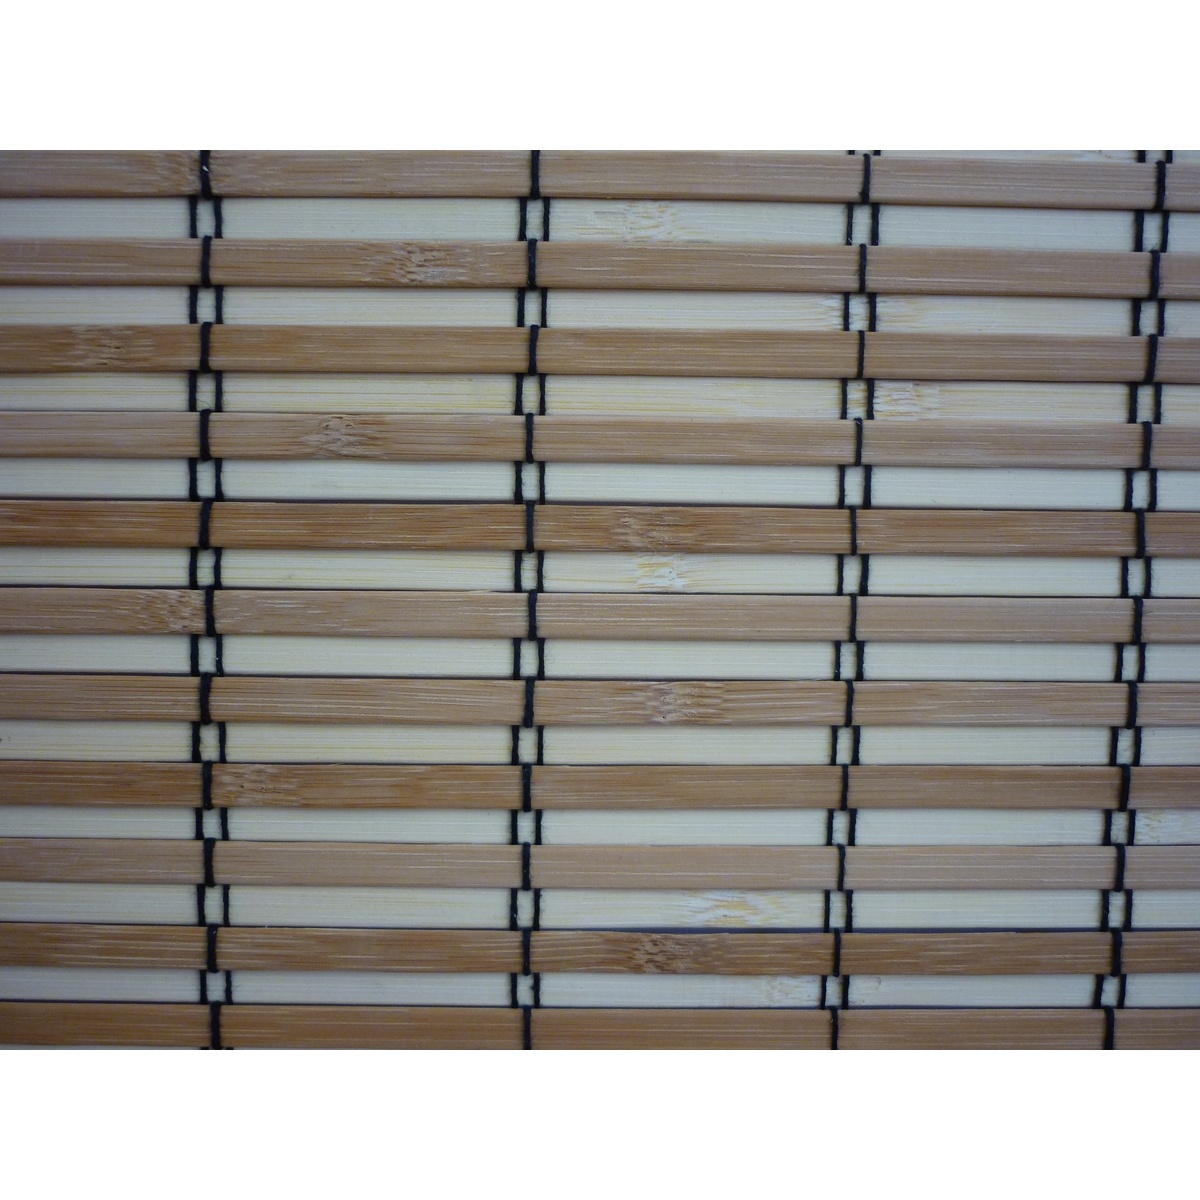 Gardinia Roleta bambusová JAVA prír./čokoláda, 120 x 160 cm